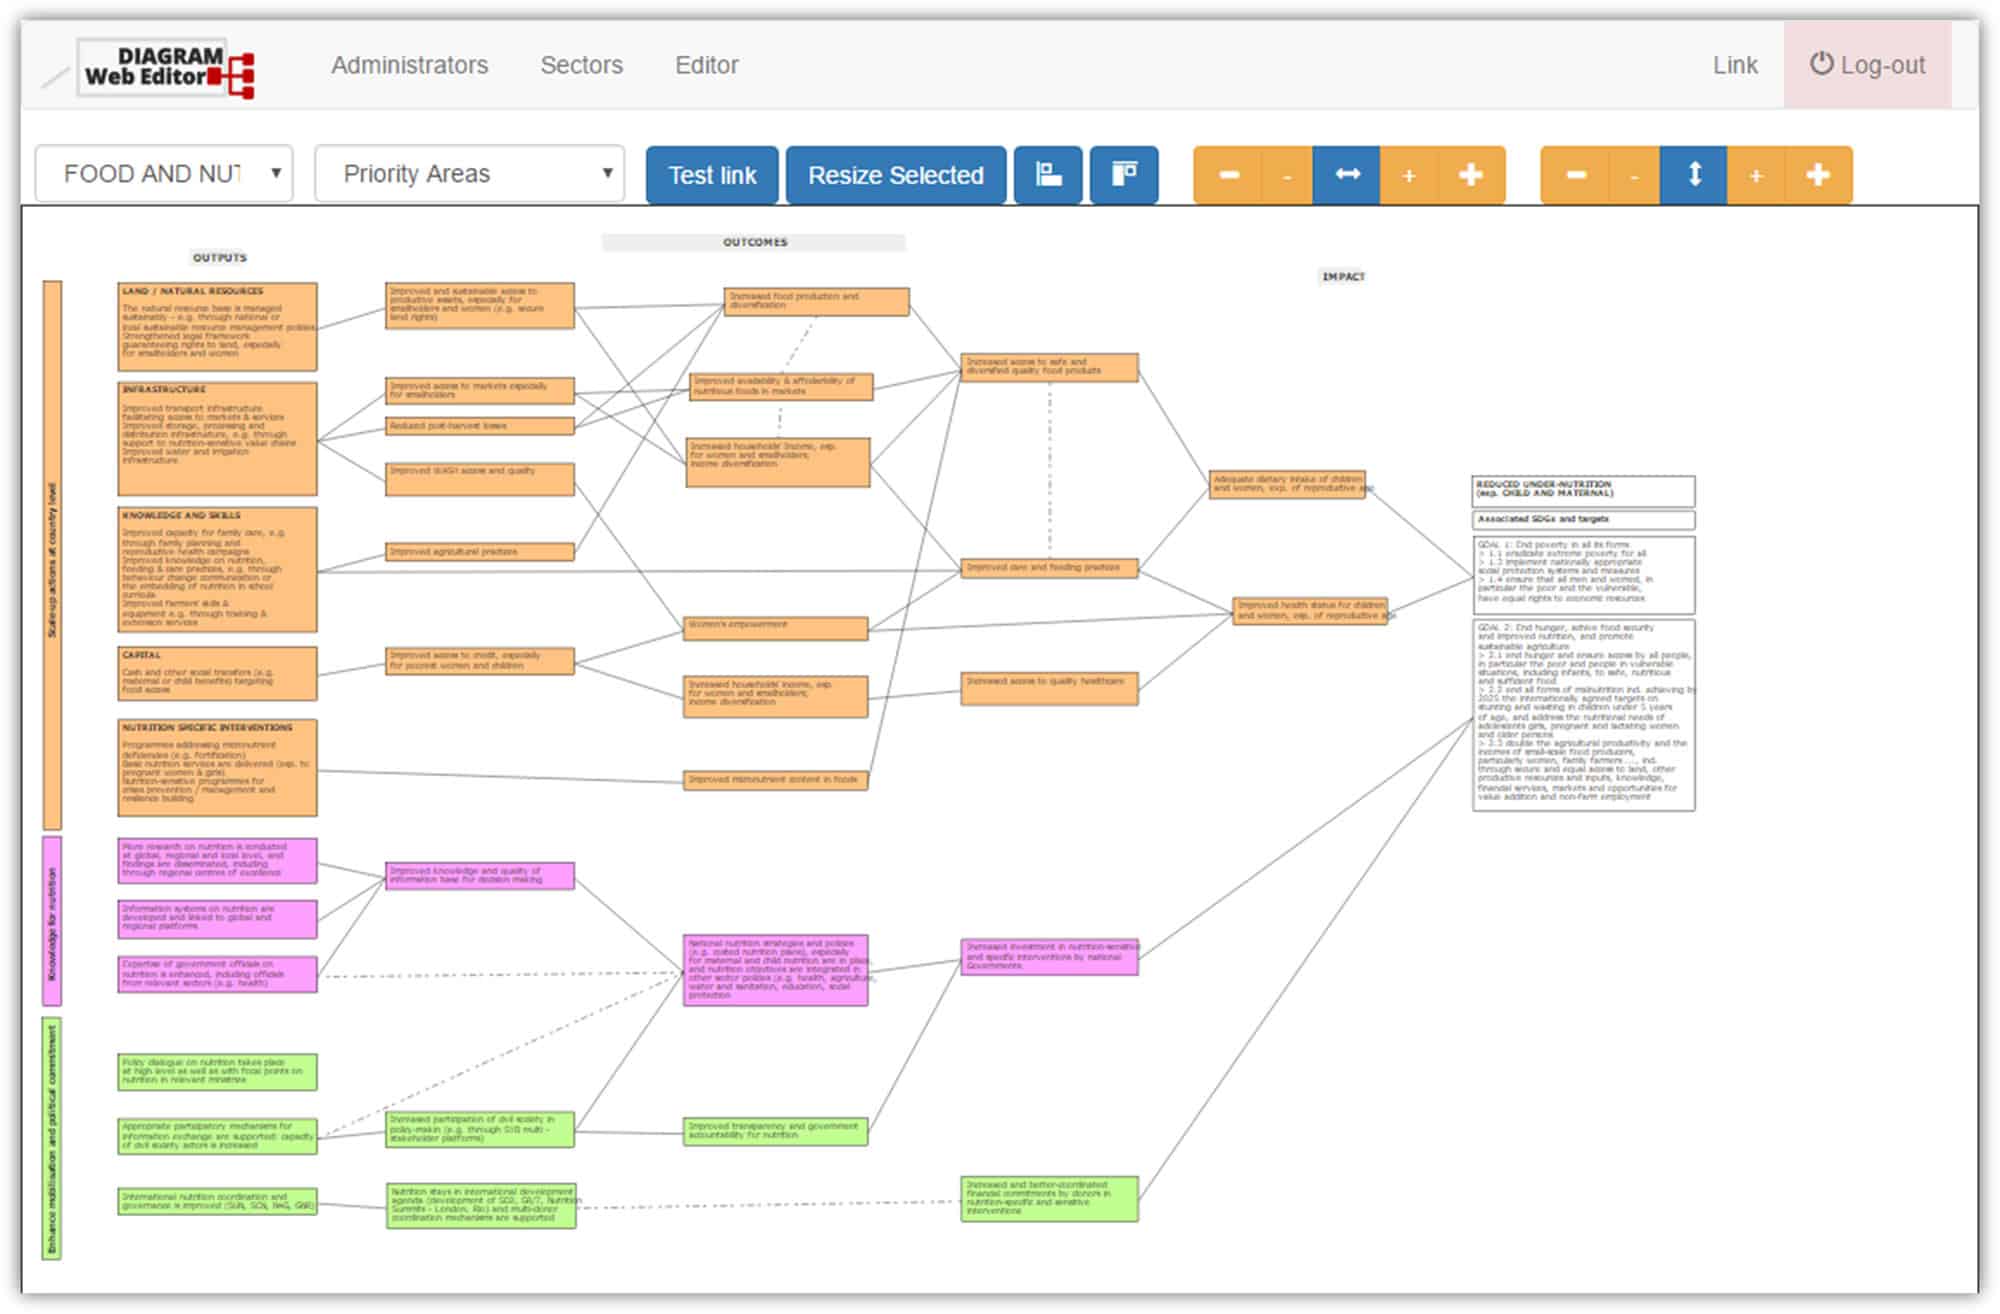 Anteprima Applicazione web per l'editing di diagrammi in formato SVG - Diagram Web Editor